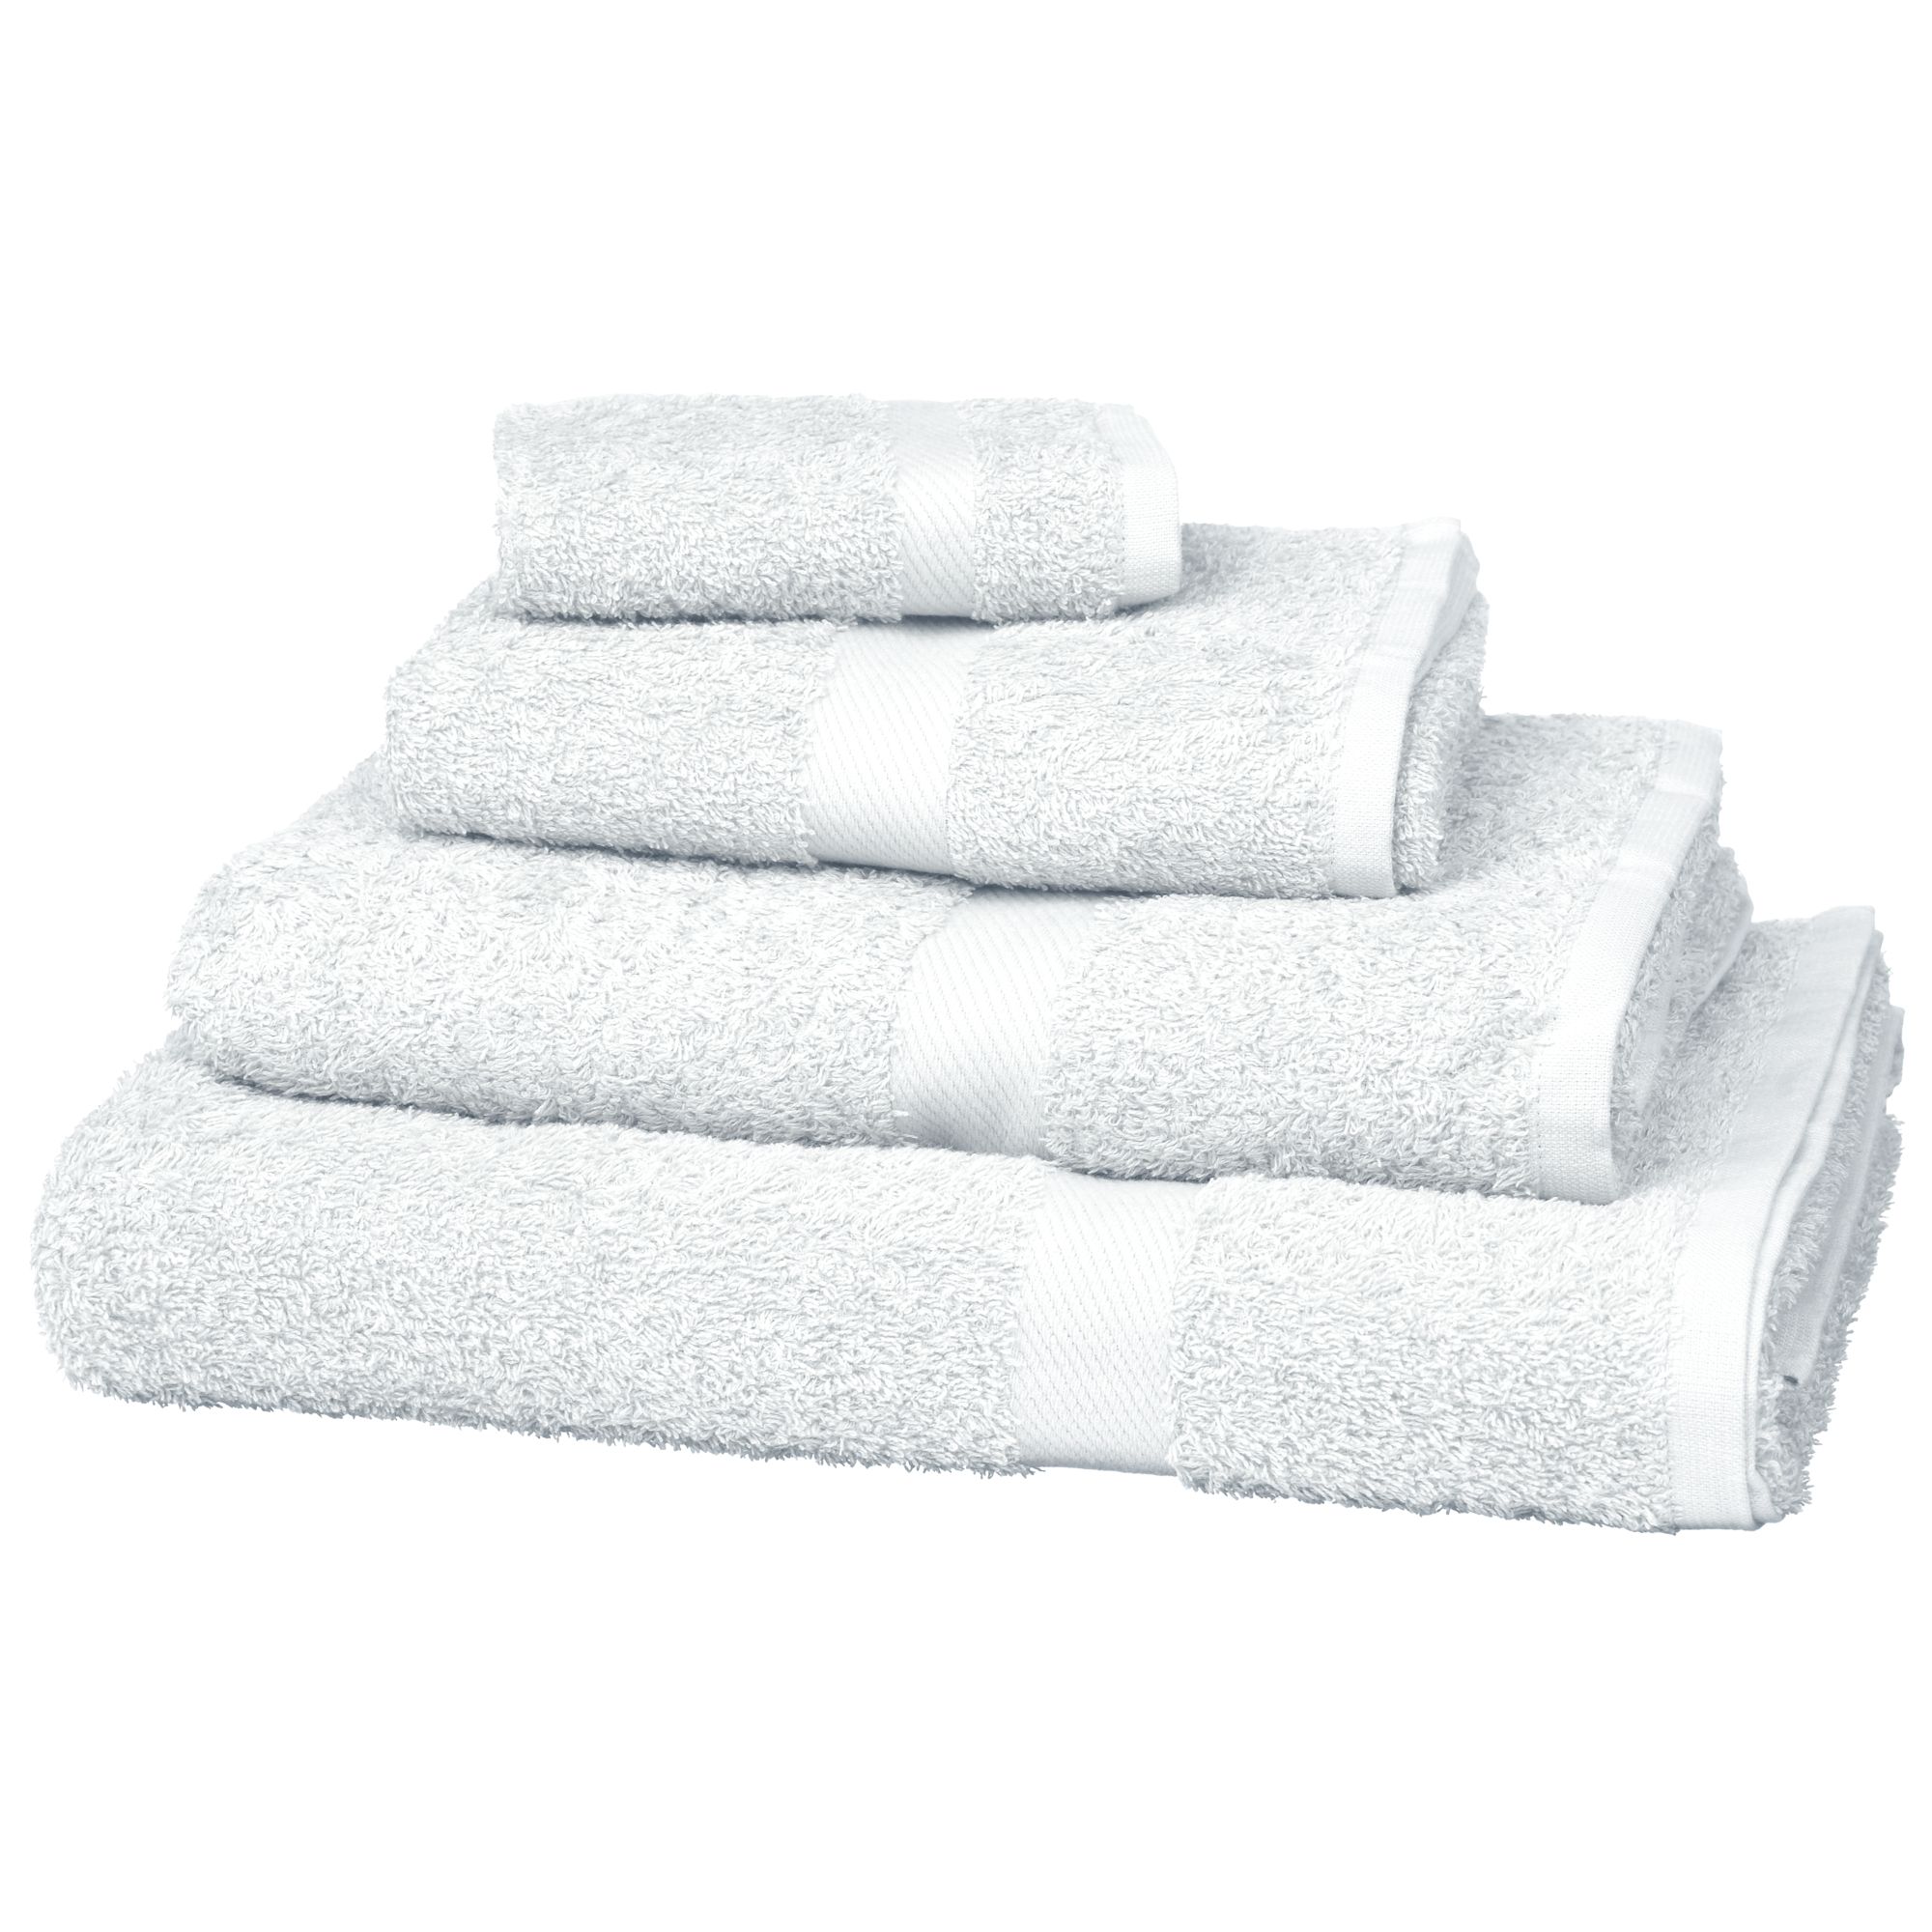 John Lewis Value Cotton Towels 118302